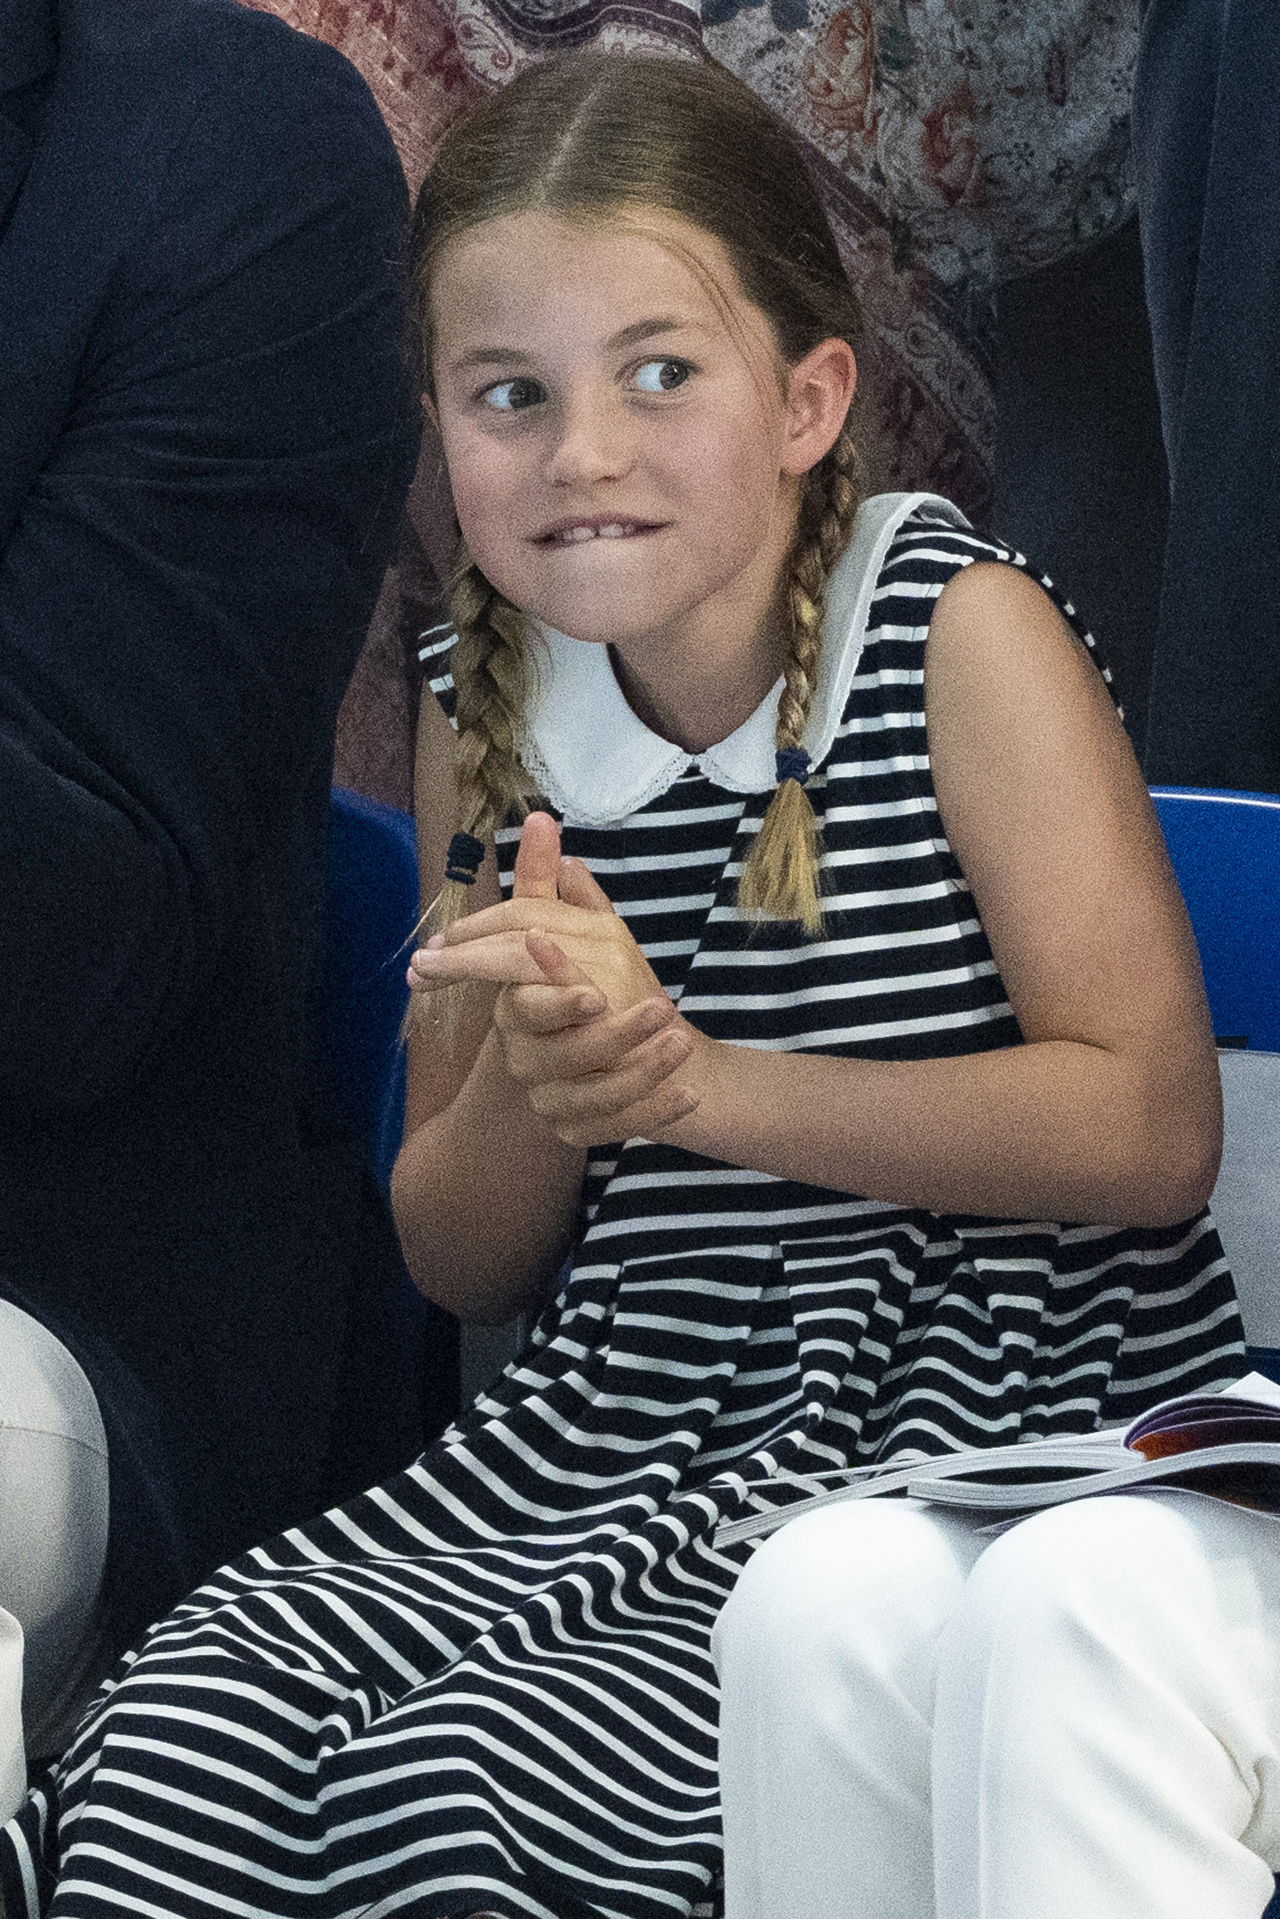 Prinzessin Charlotte macht ein lustiges Gesicht, als sie bei den Commonwealth Games in einem gestreiften Kleid mit geflochtenem Kragen und Zopf auf der Tribüne sitzt.